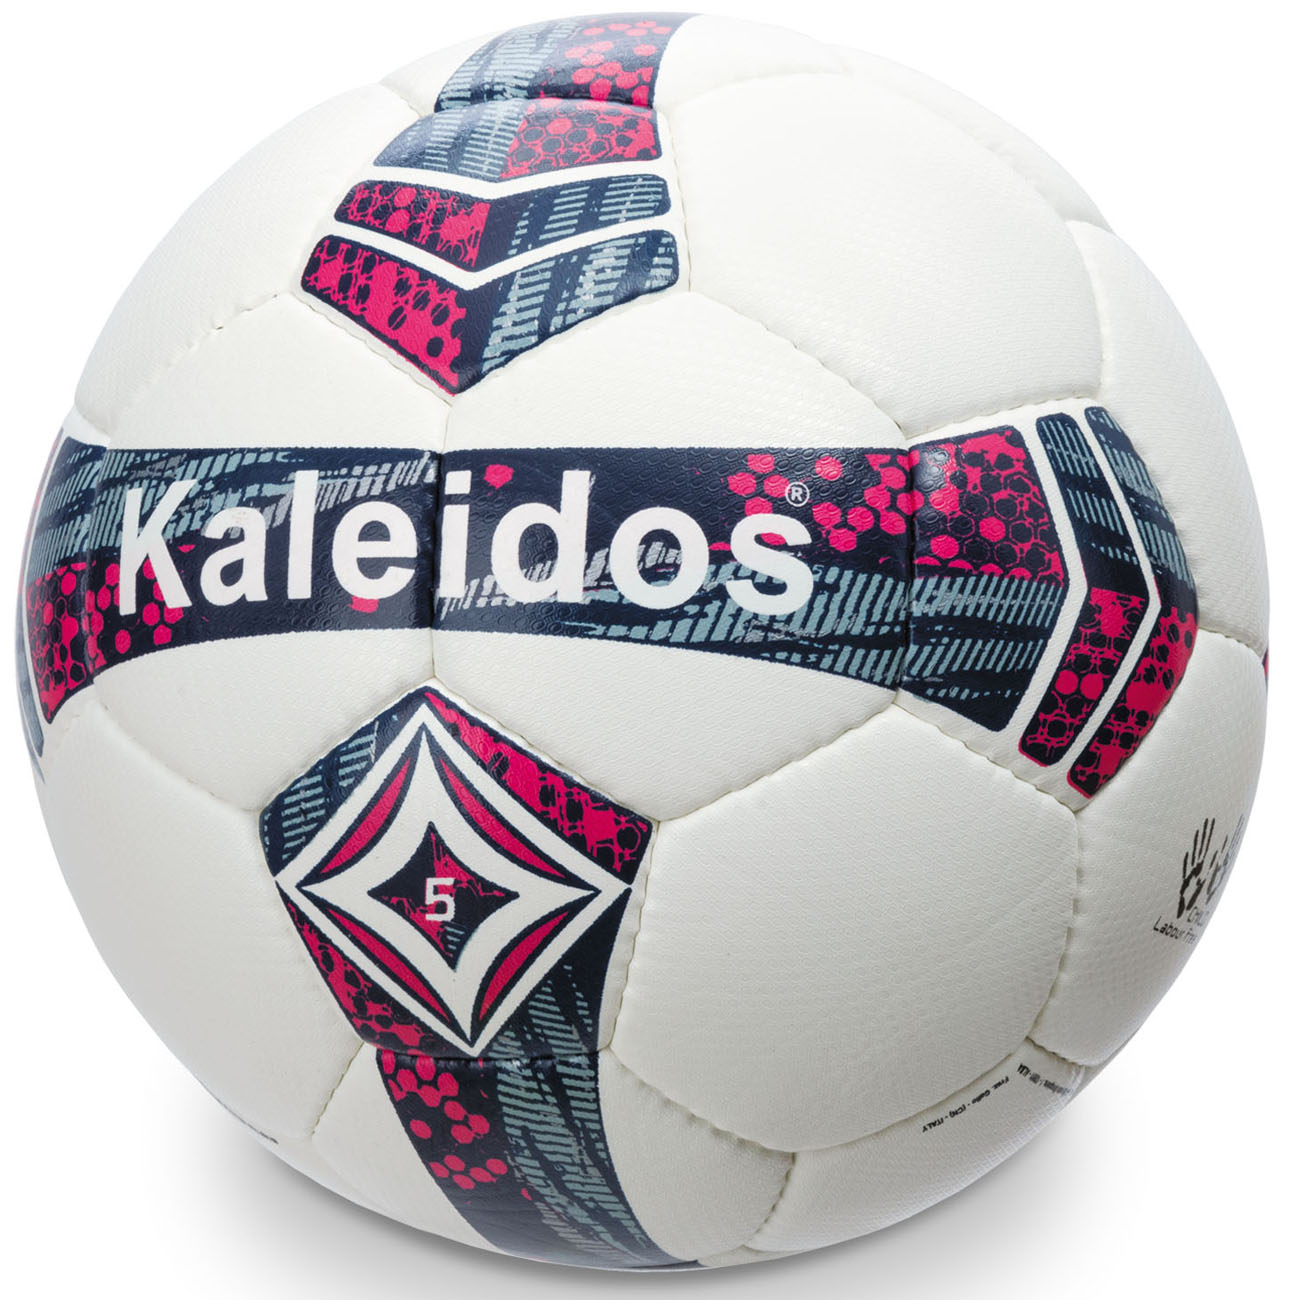 MONDO Fotbalový míč Kaleidos MATCH PRO velikost 5